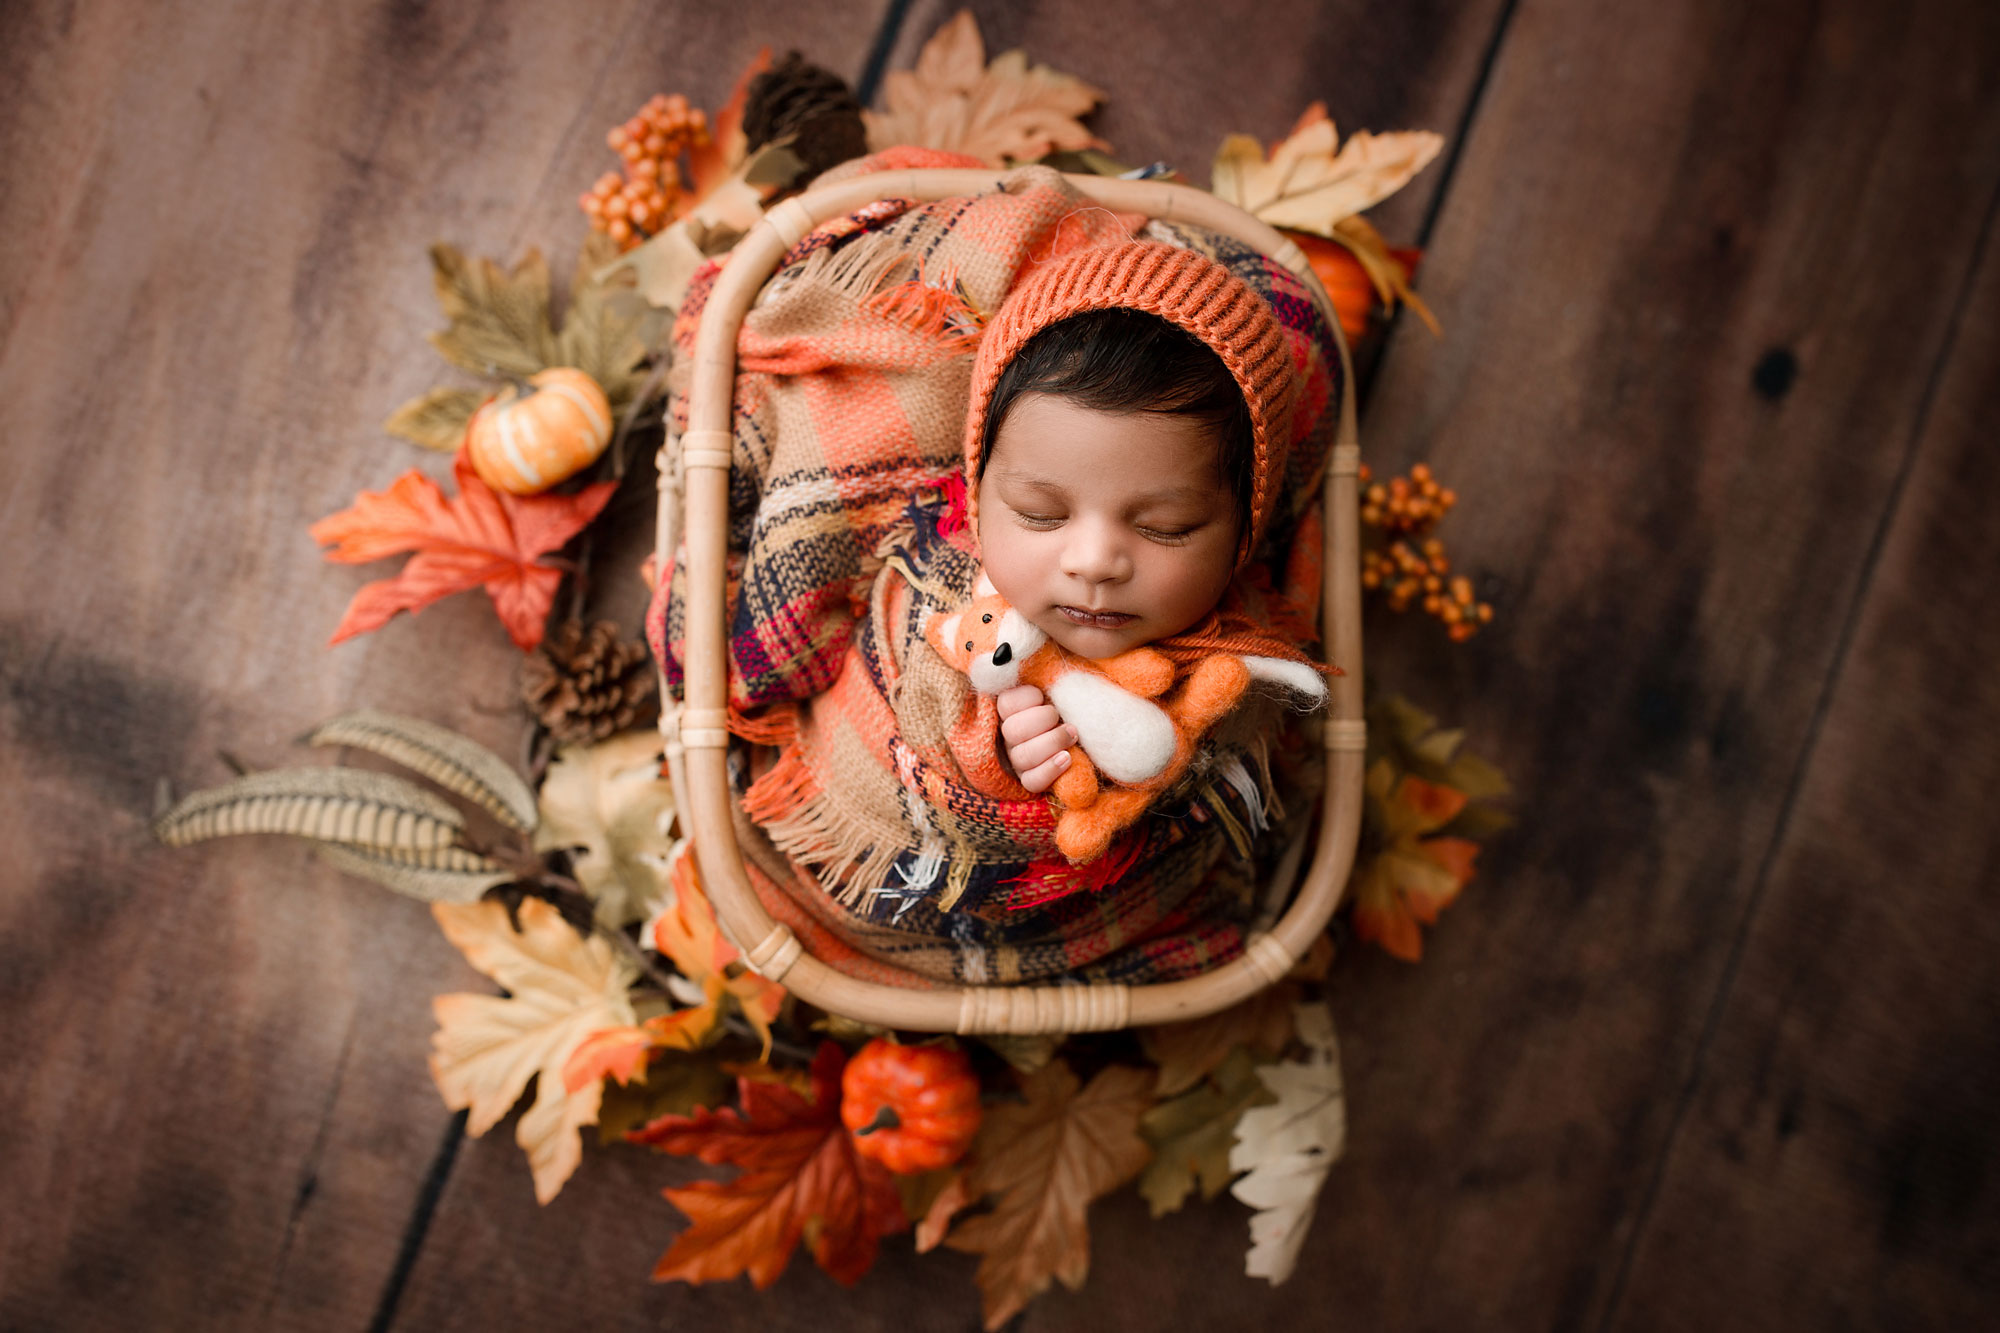 top nj newborn baby photographer baby sleeping in a basket prop